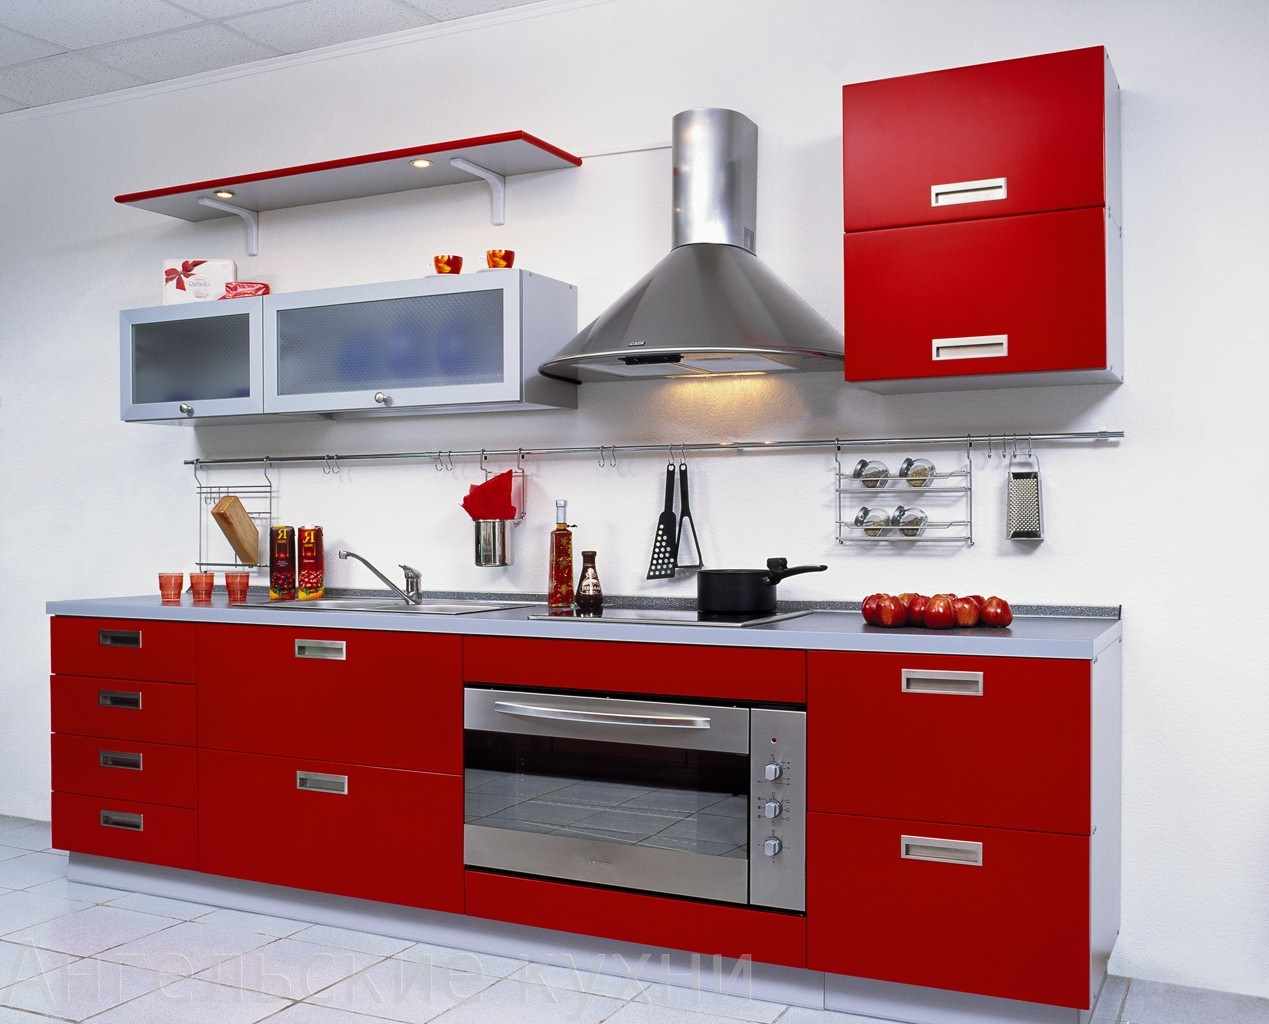 kırmızı mutfağın sıradışı tasarımına bir örnek